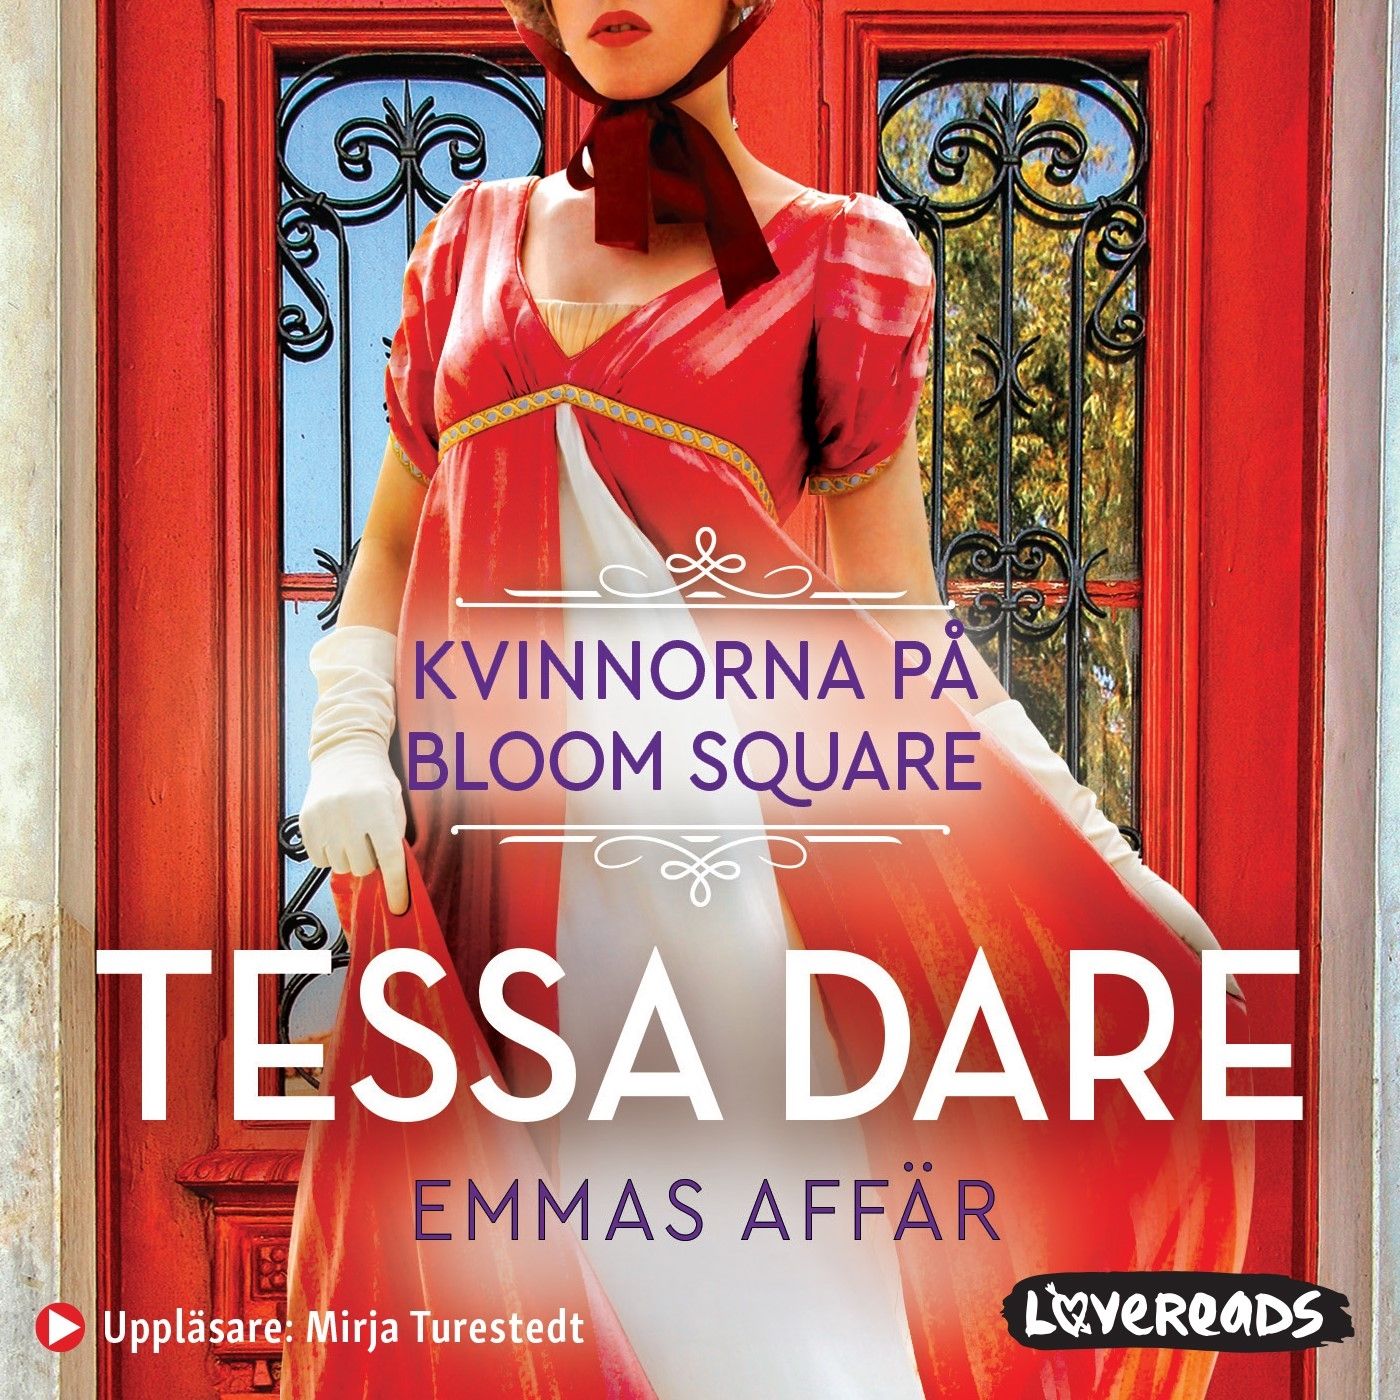 Emmas affär, audiobook by Tessa Dare